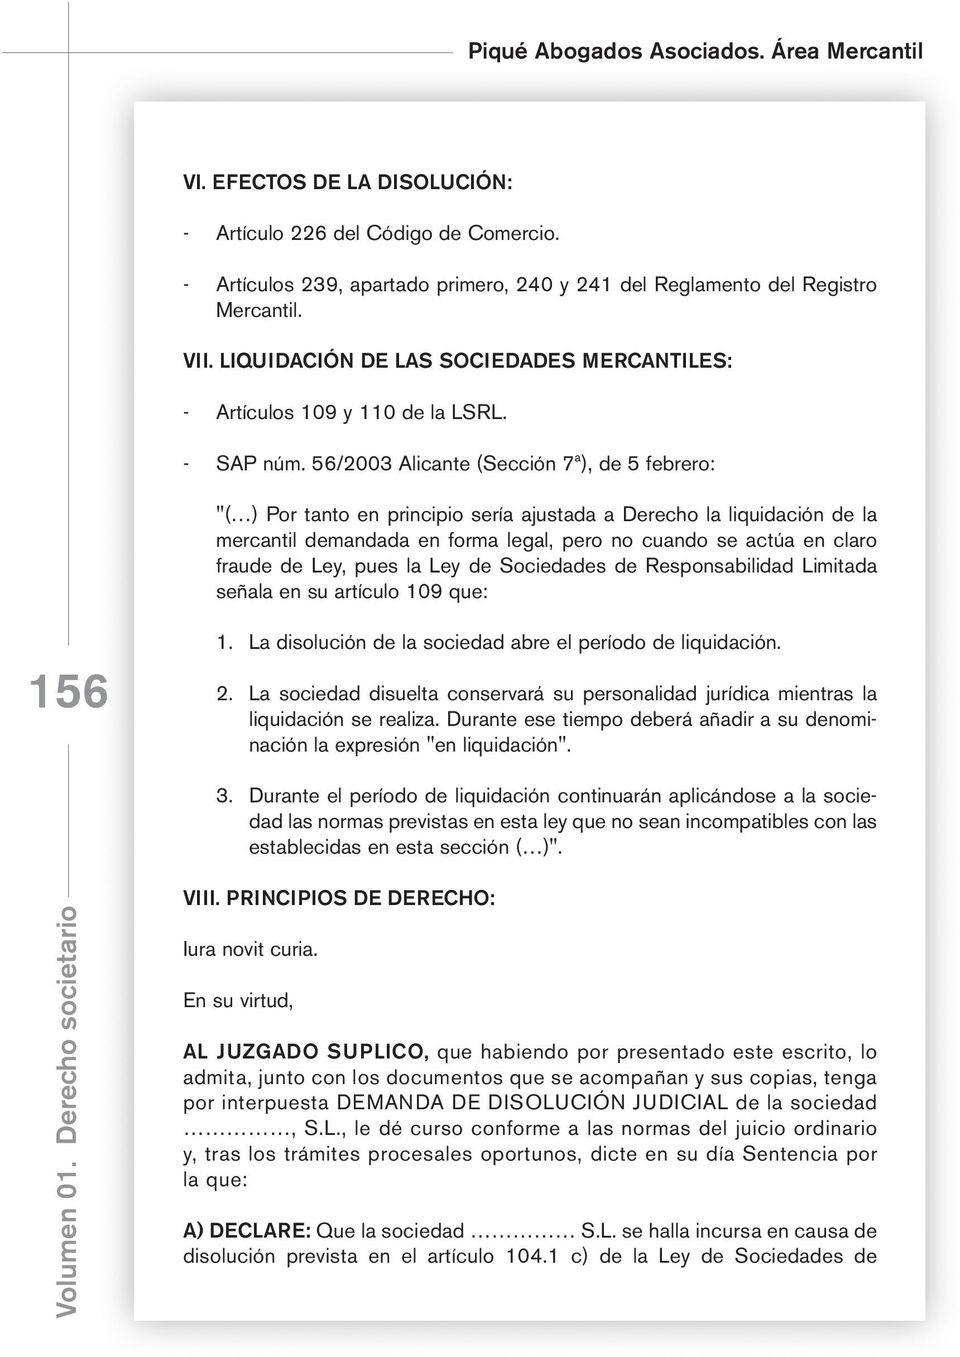 56/2003 Alicante (Sección 7ª), de 5 febrero: "( ) Por tanto en principio sería ajustada a Derecho la liquidación de la mercantil demandada en forma legal, pero no cuando se actúa en claro fraude de